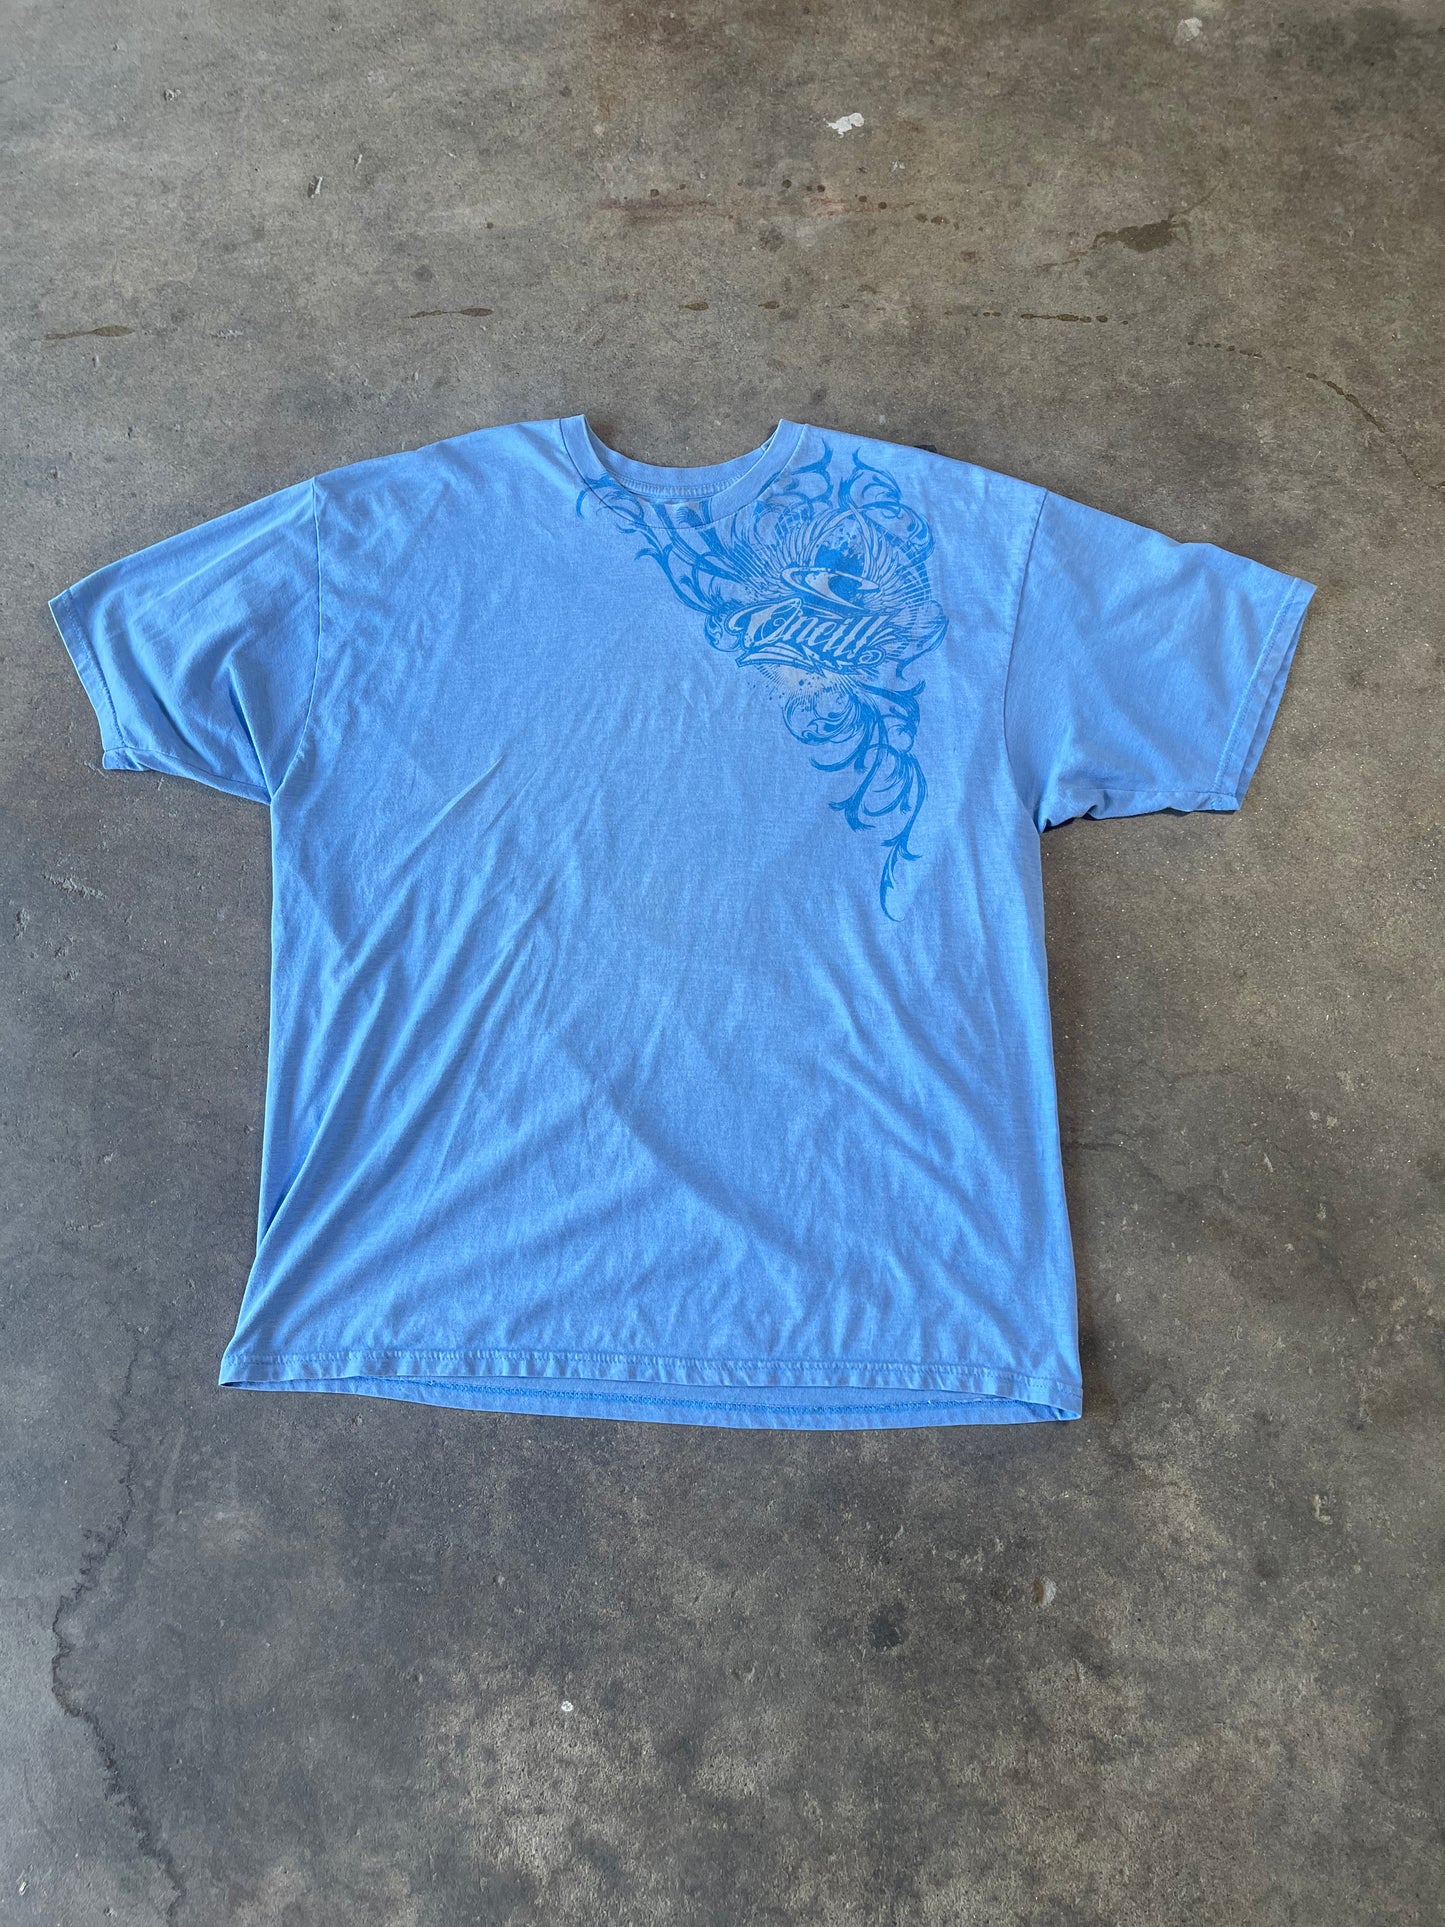 Blue O’Neil T Shirt 2XL